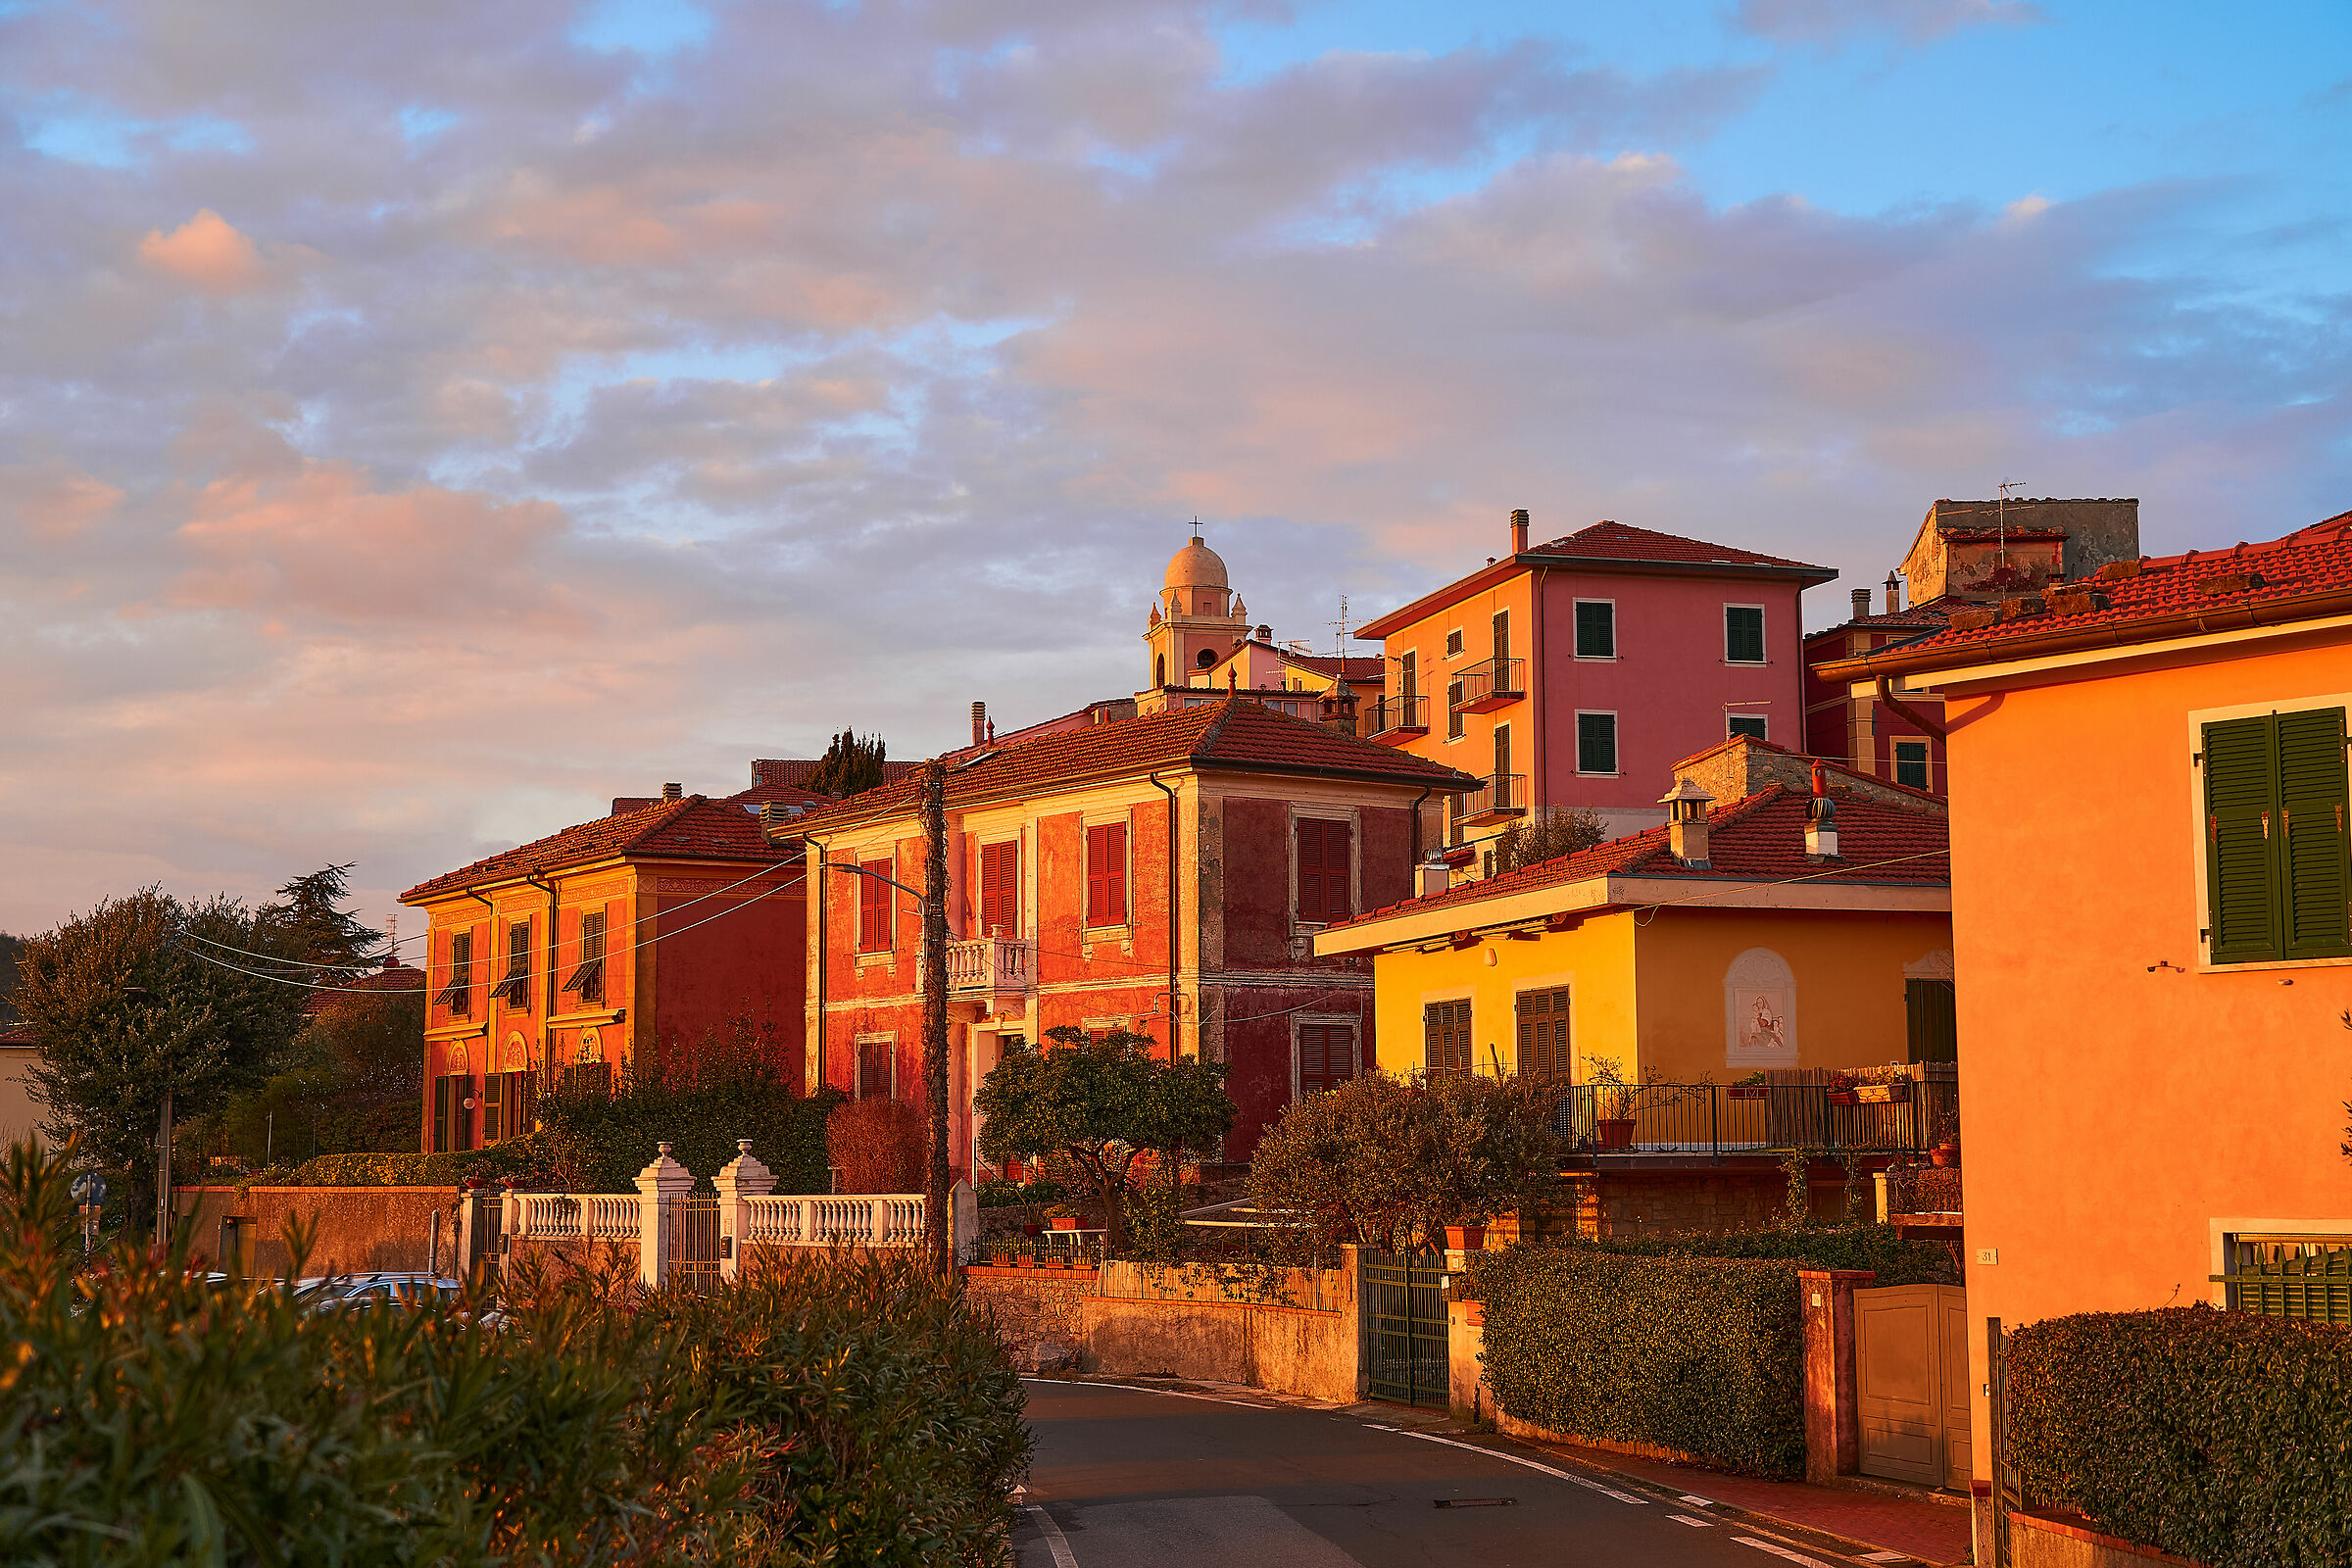 The village of Monte Marcello...